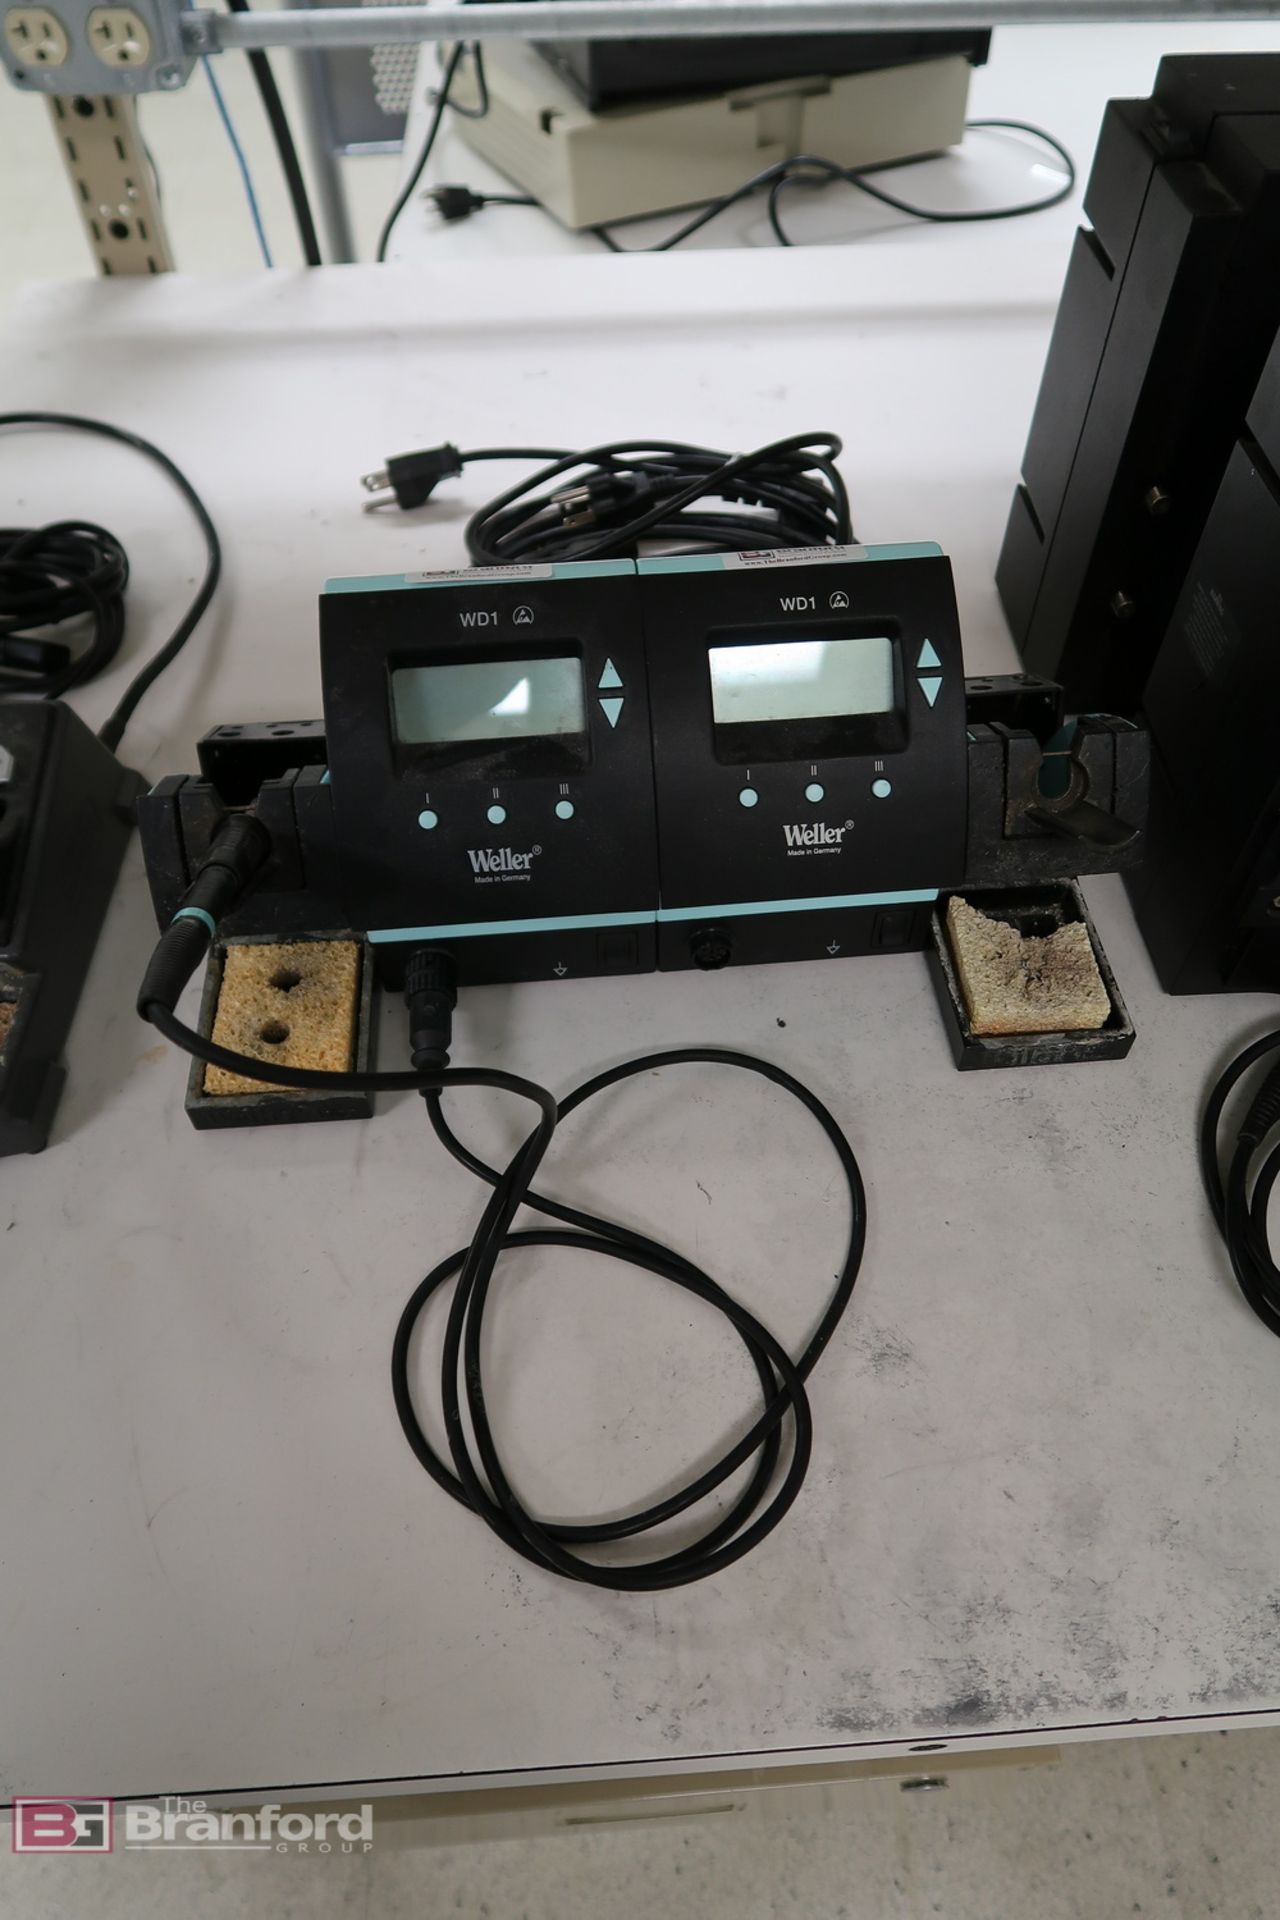 (2) Weller WD1 digital soldering stations